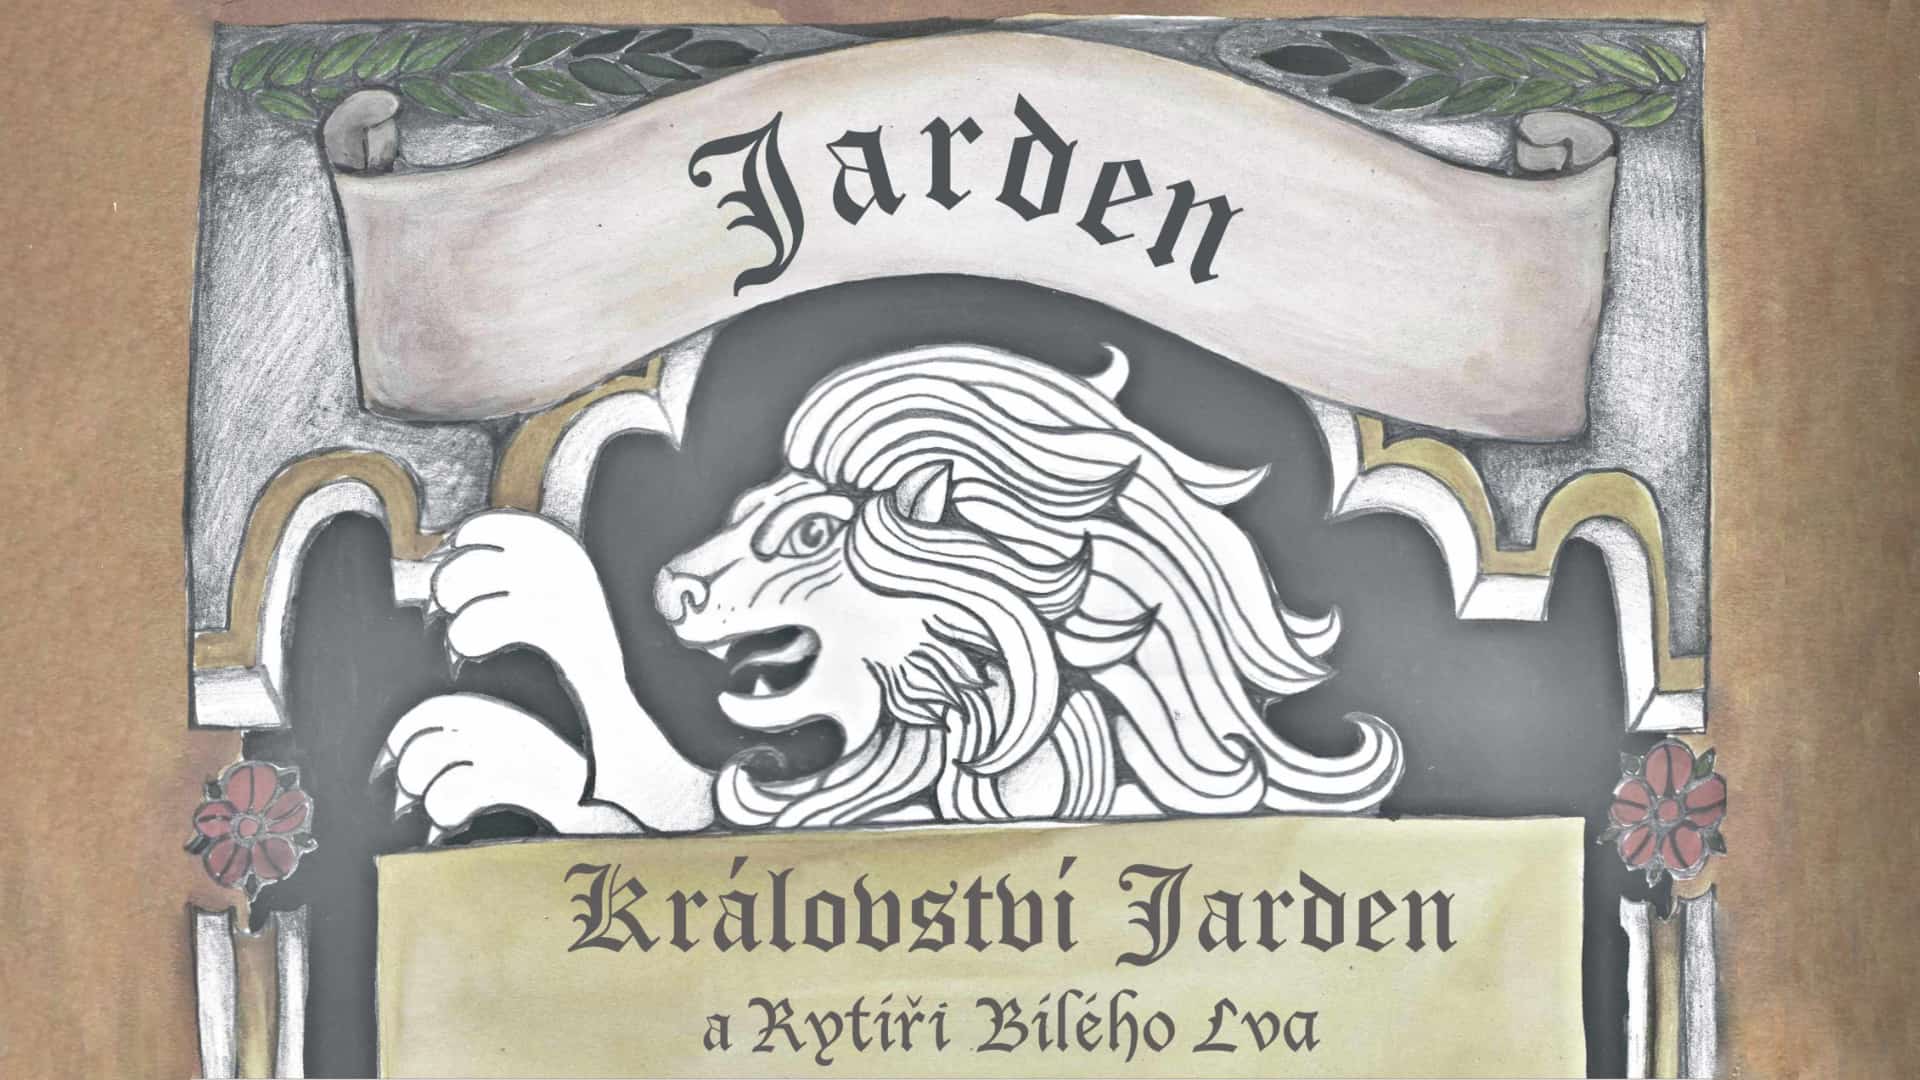 Království Jarden a rytíři Bílého lva 7